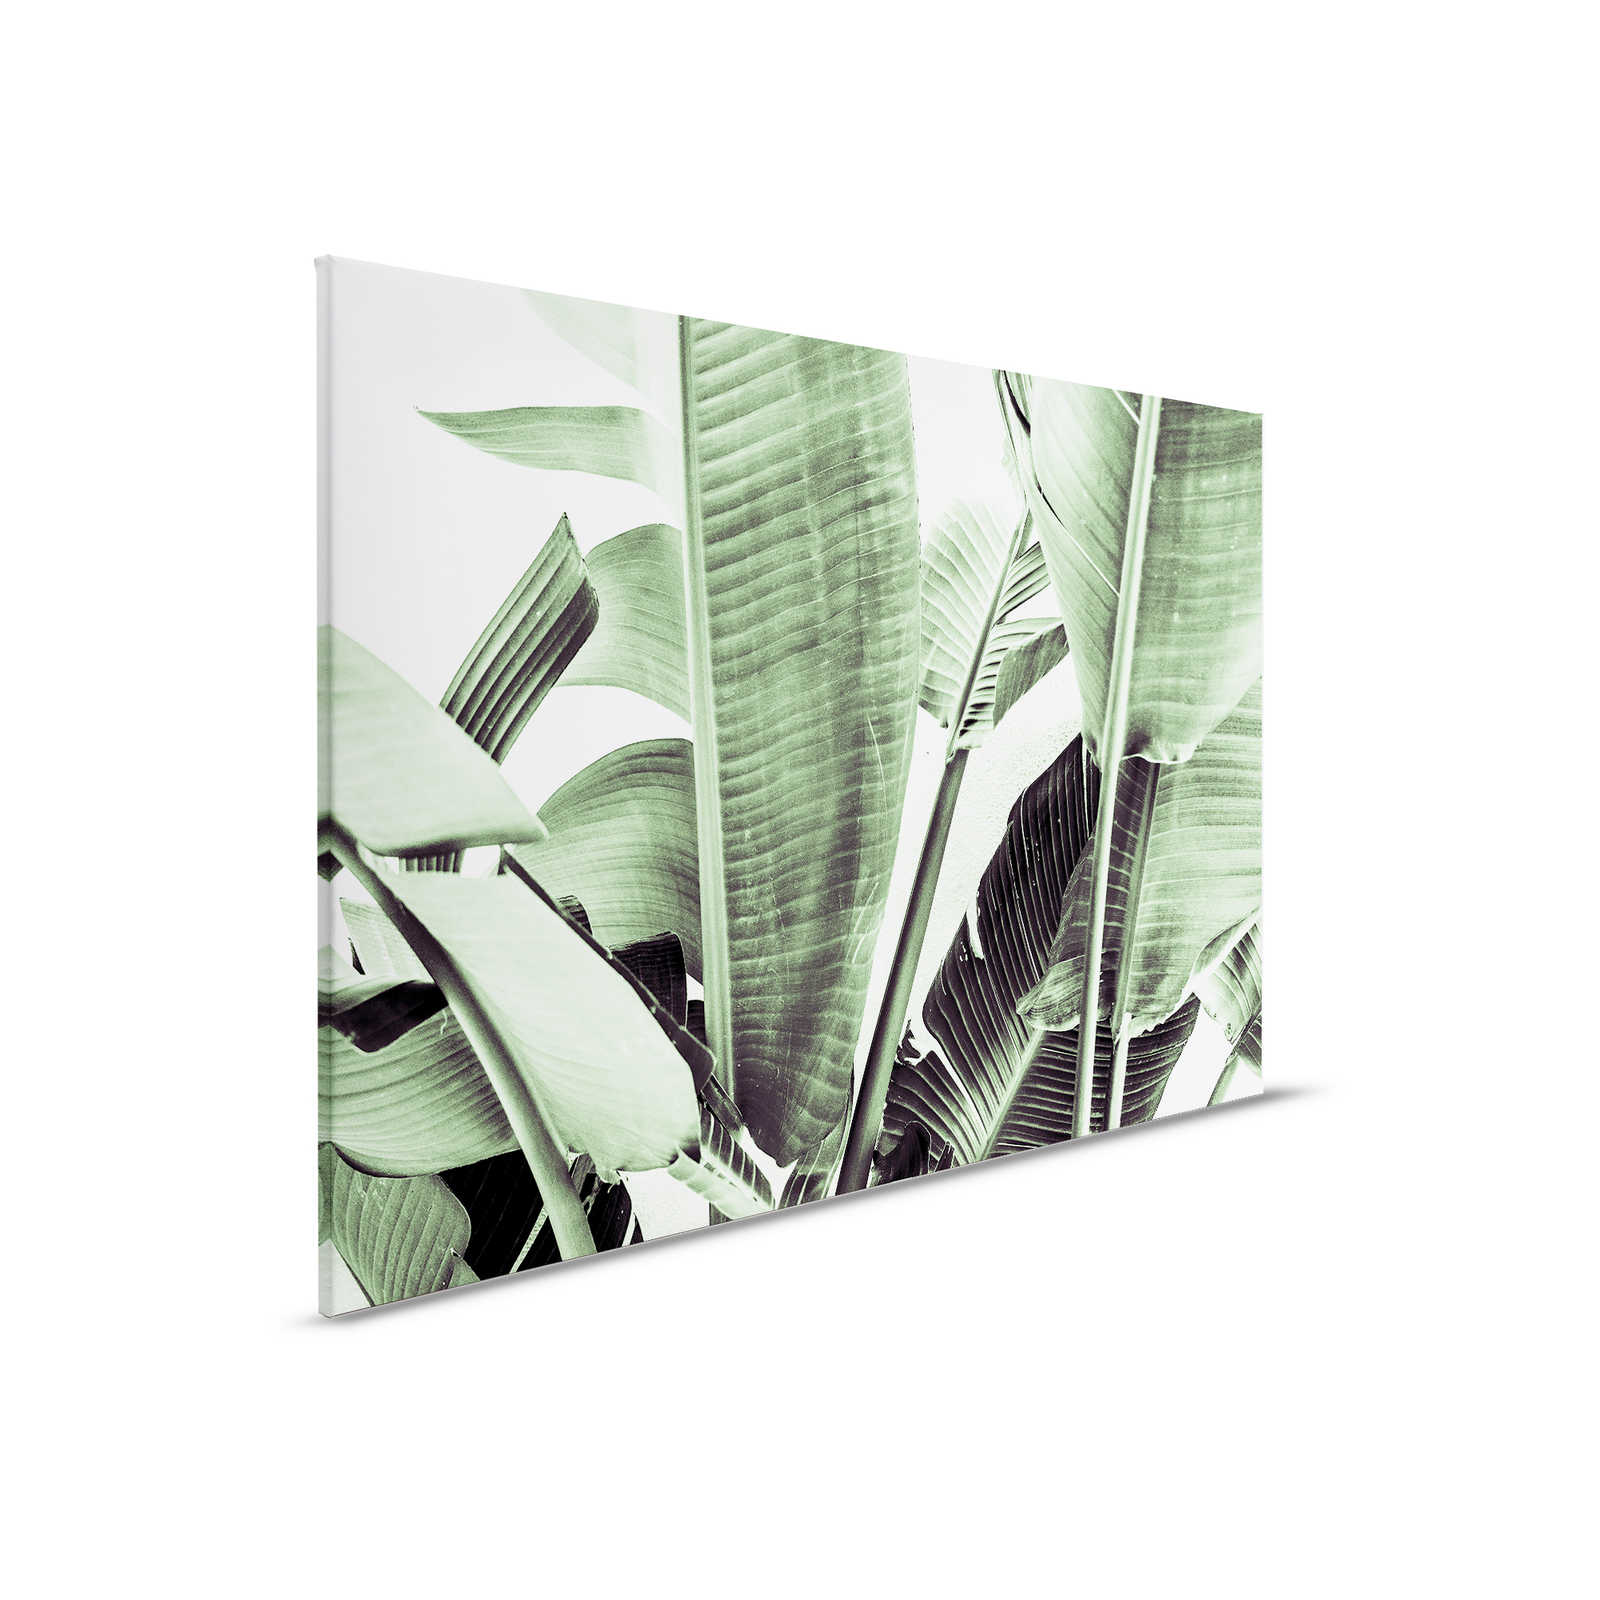             Leinwandbild Detailaufnahme von Palmenblättern – 0,90 m x 0,60 m
        